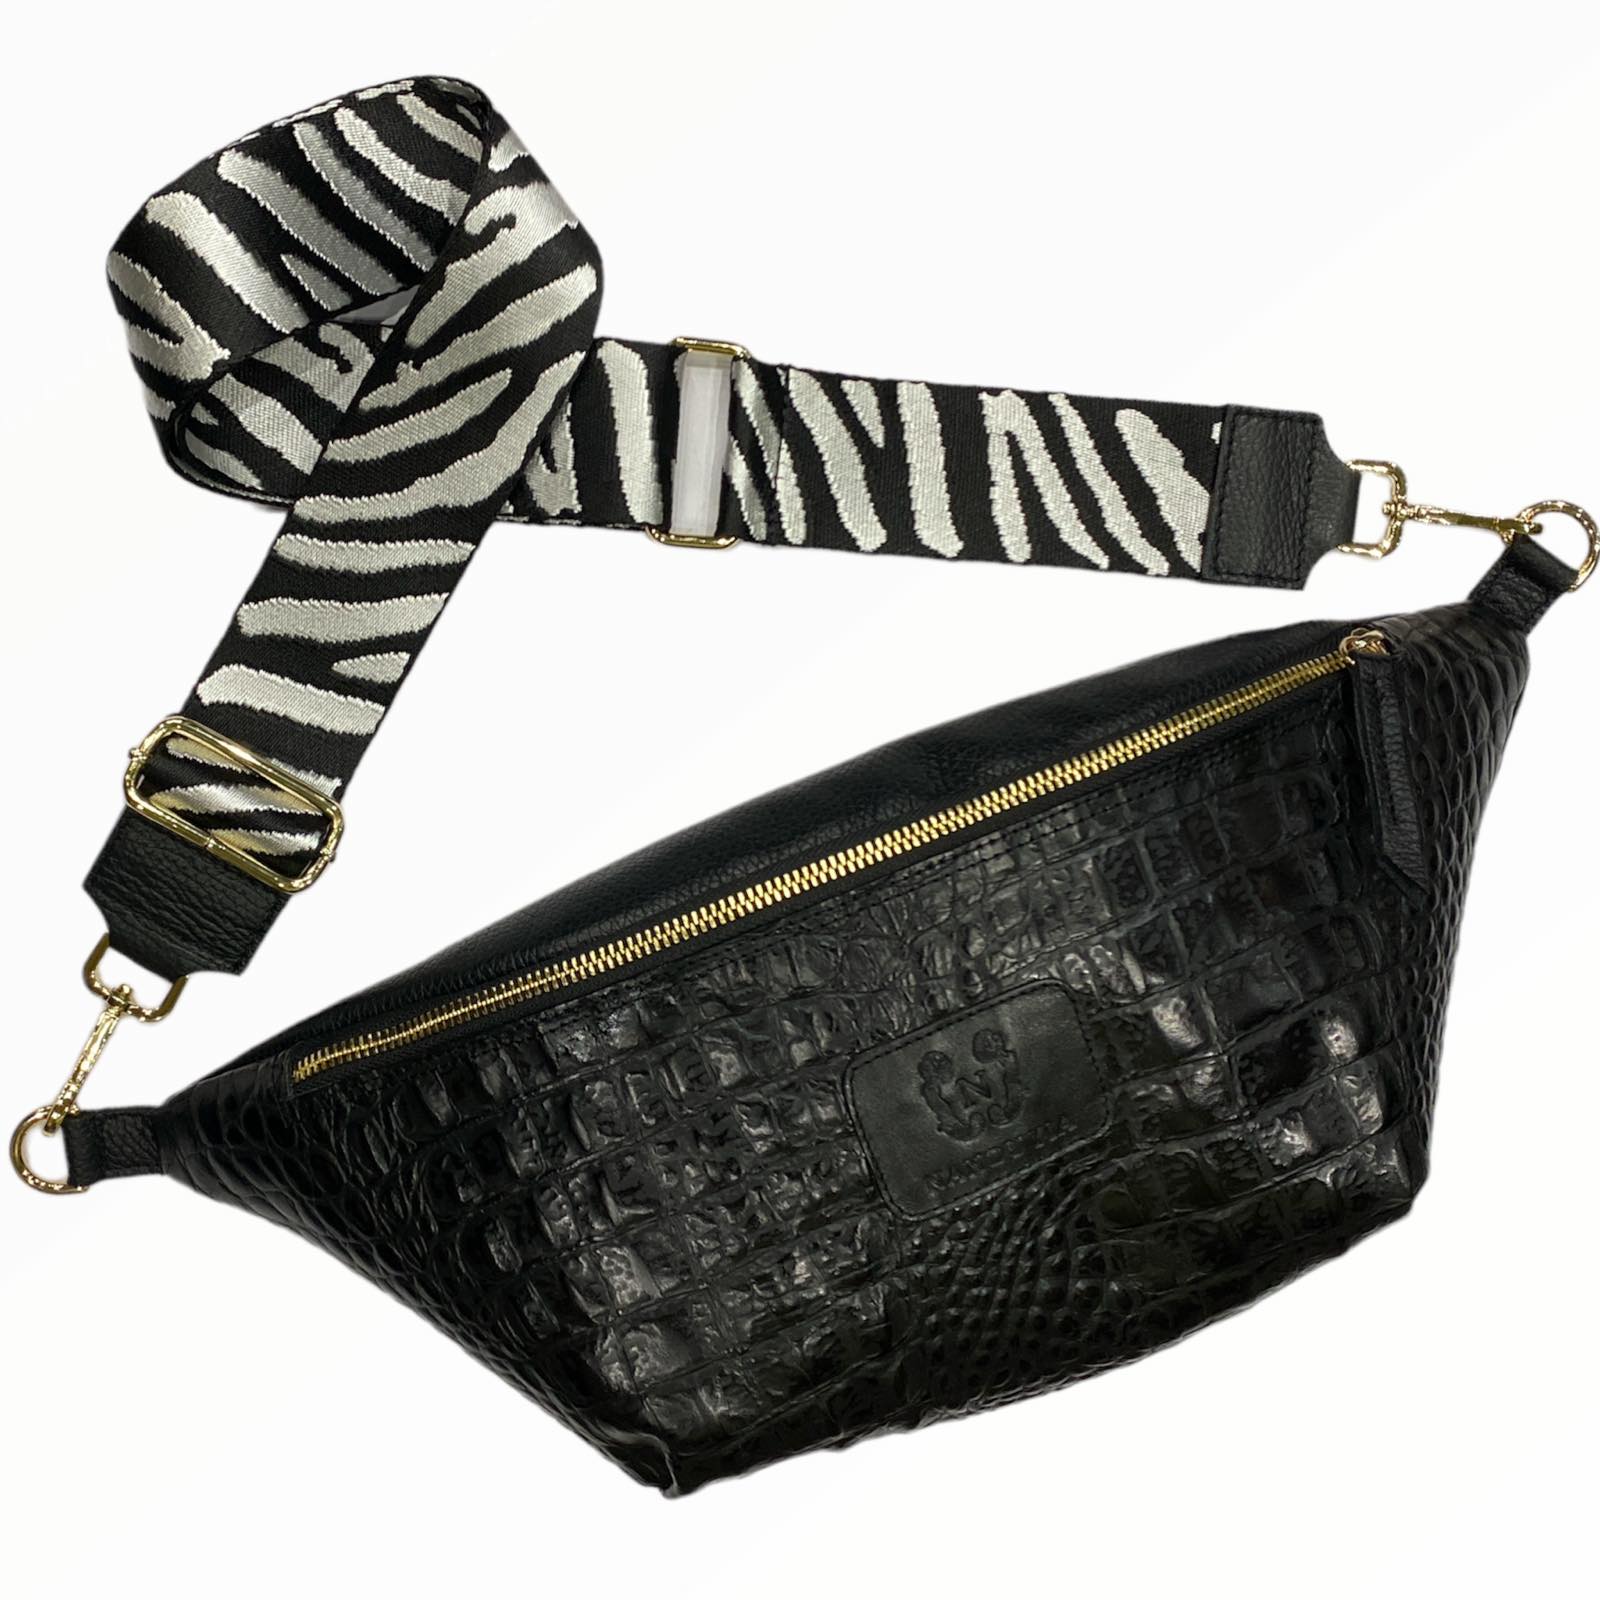 XL black alligator-print leather belt bag.Gold metals